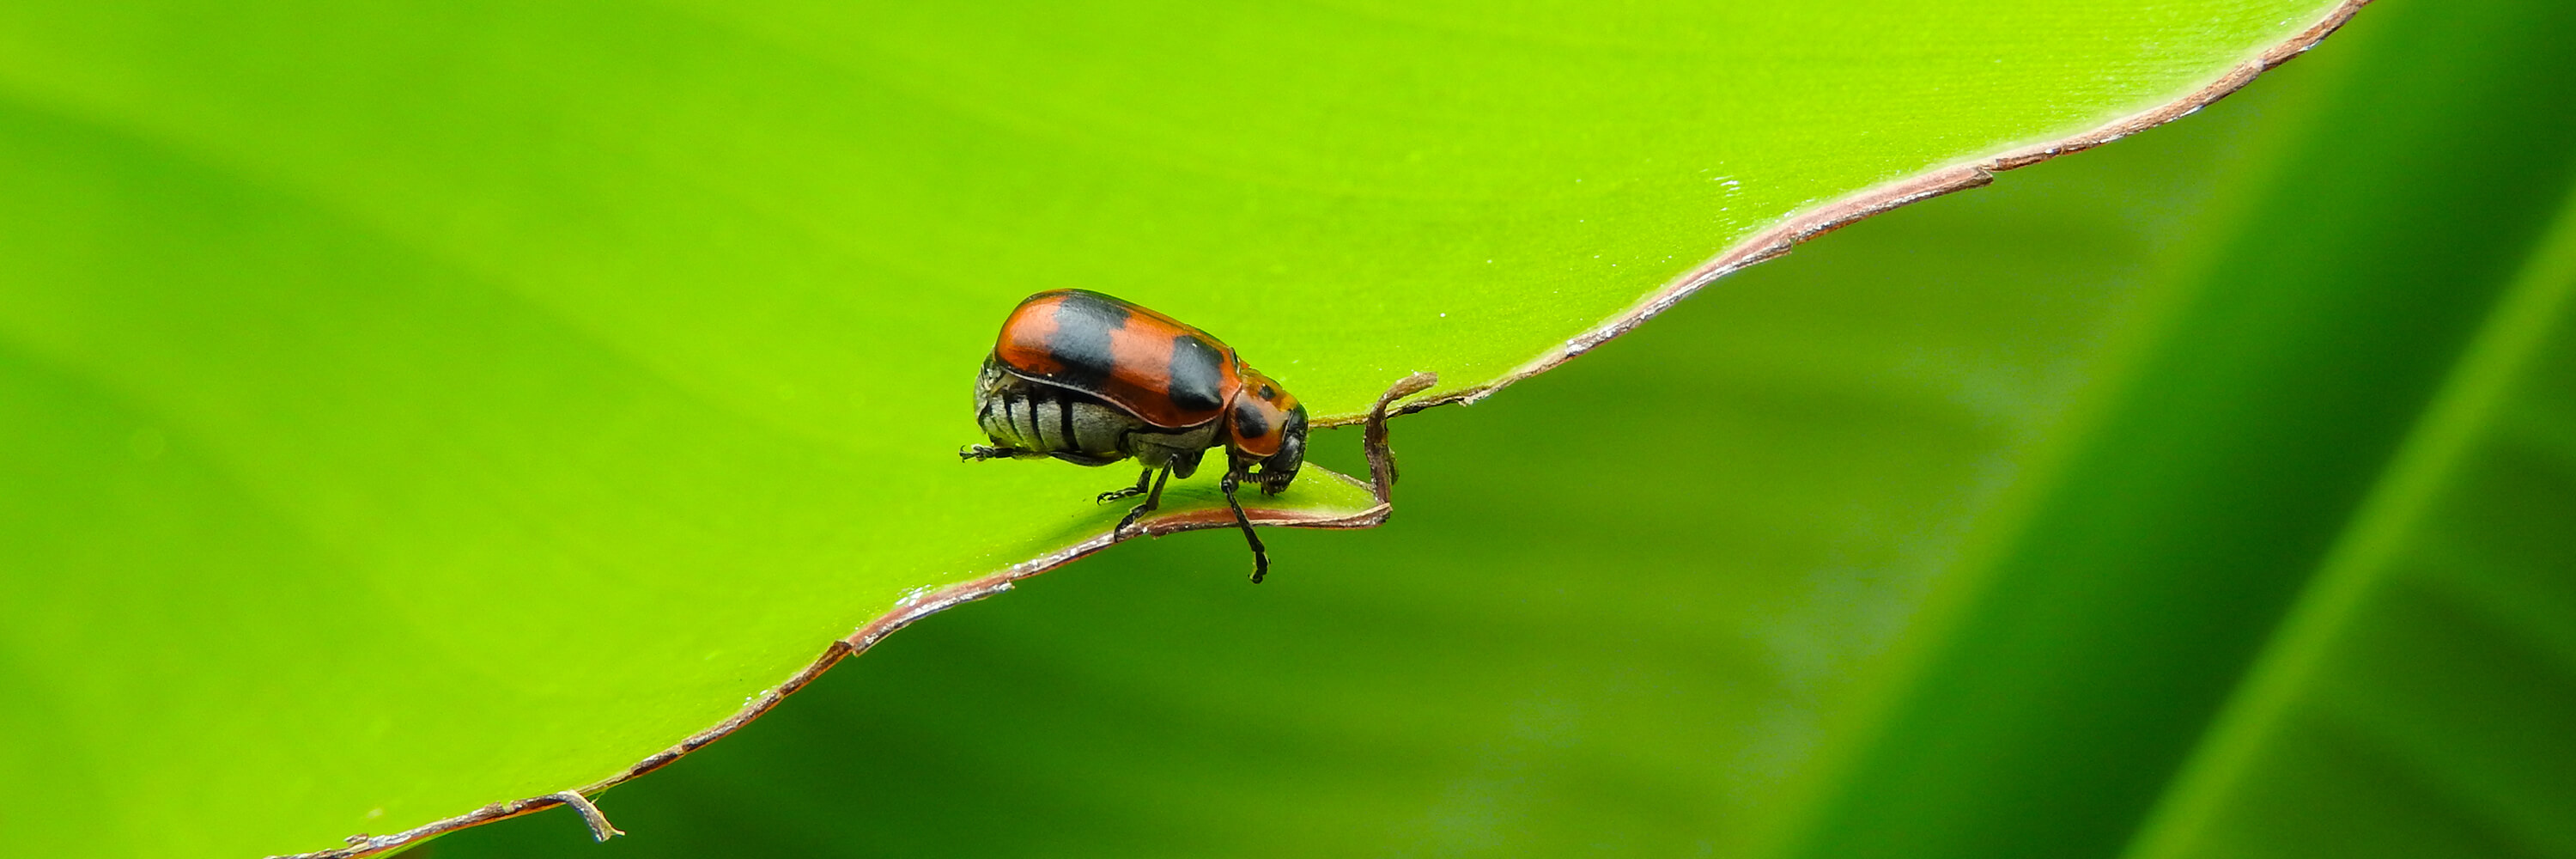 insecto mariquita